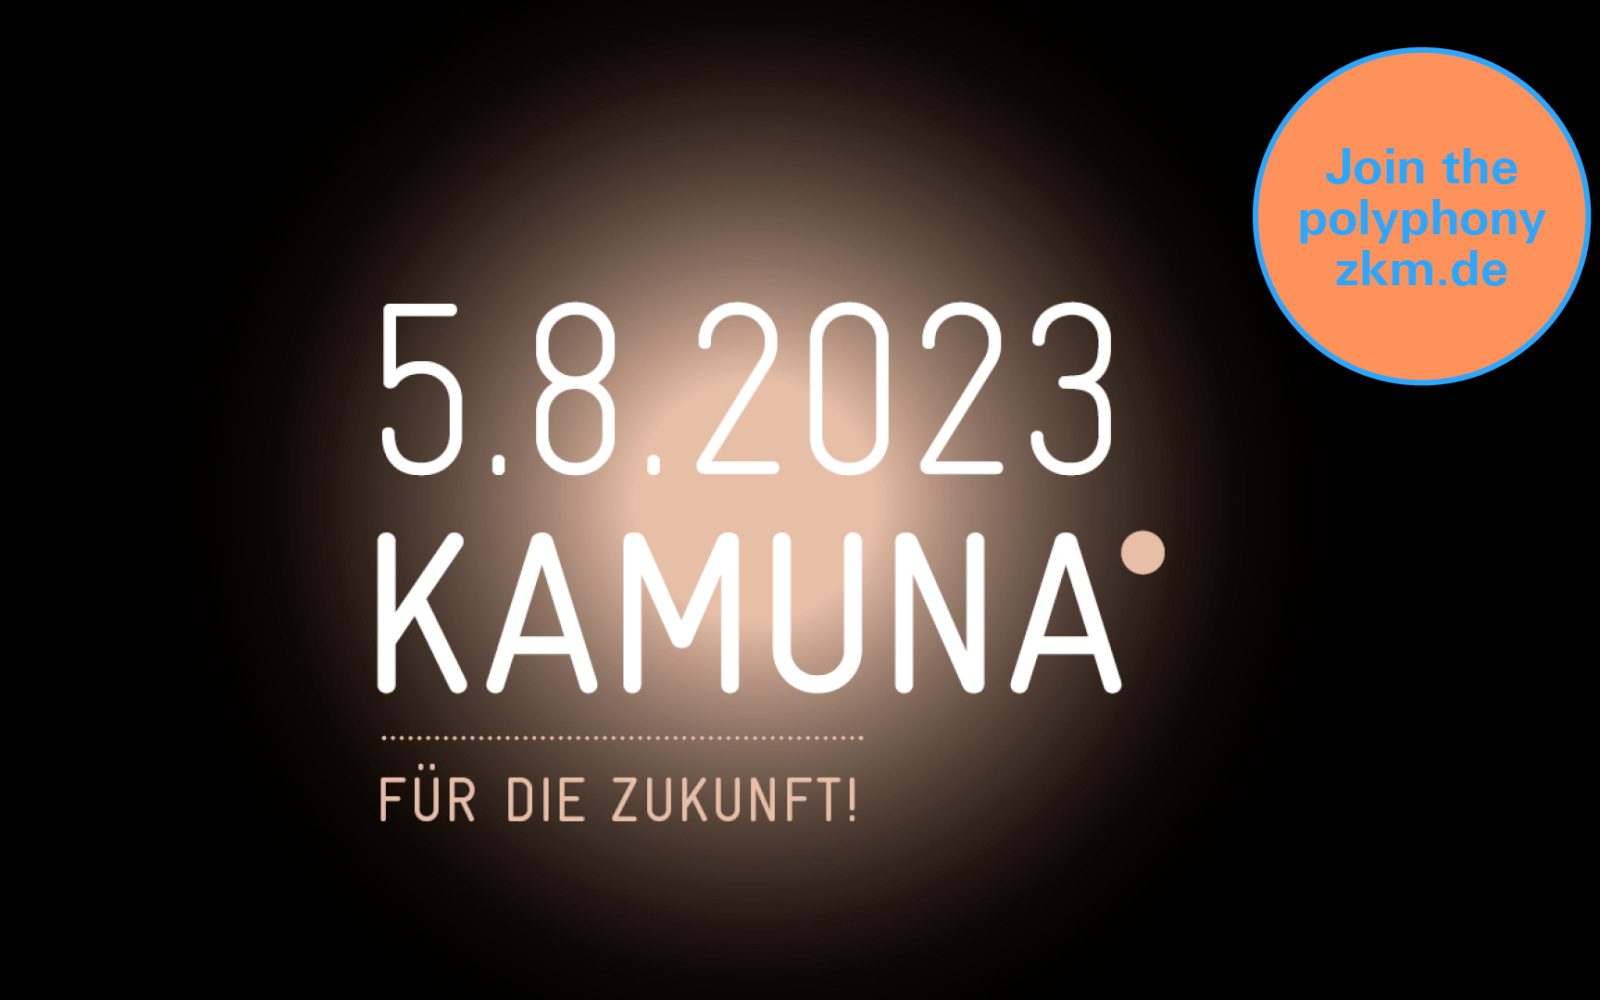 Zu sehen ist der Titel "KAMUNA" mit Datum vor verwaschener rostbrauner Sonne auf schwarzem Grund